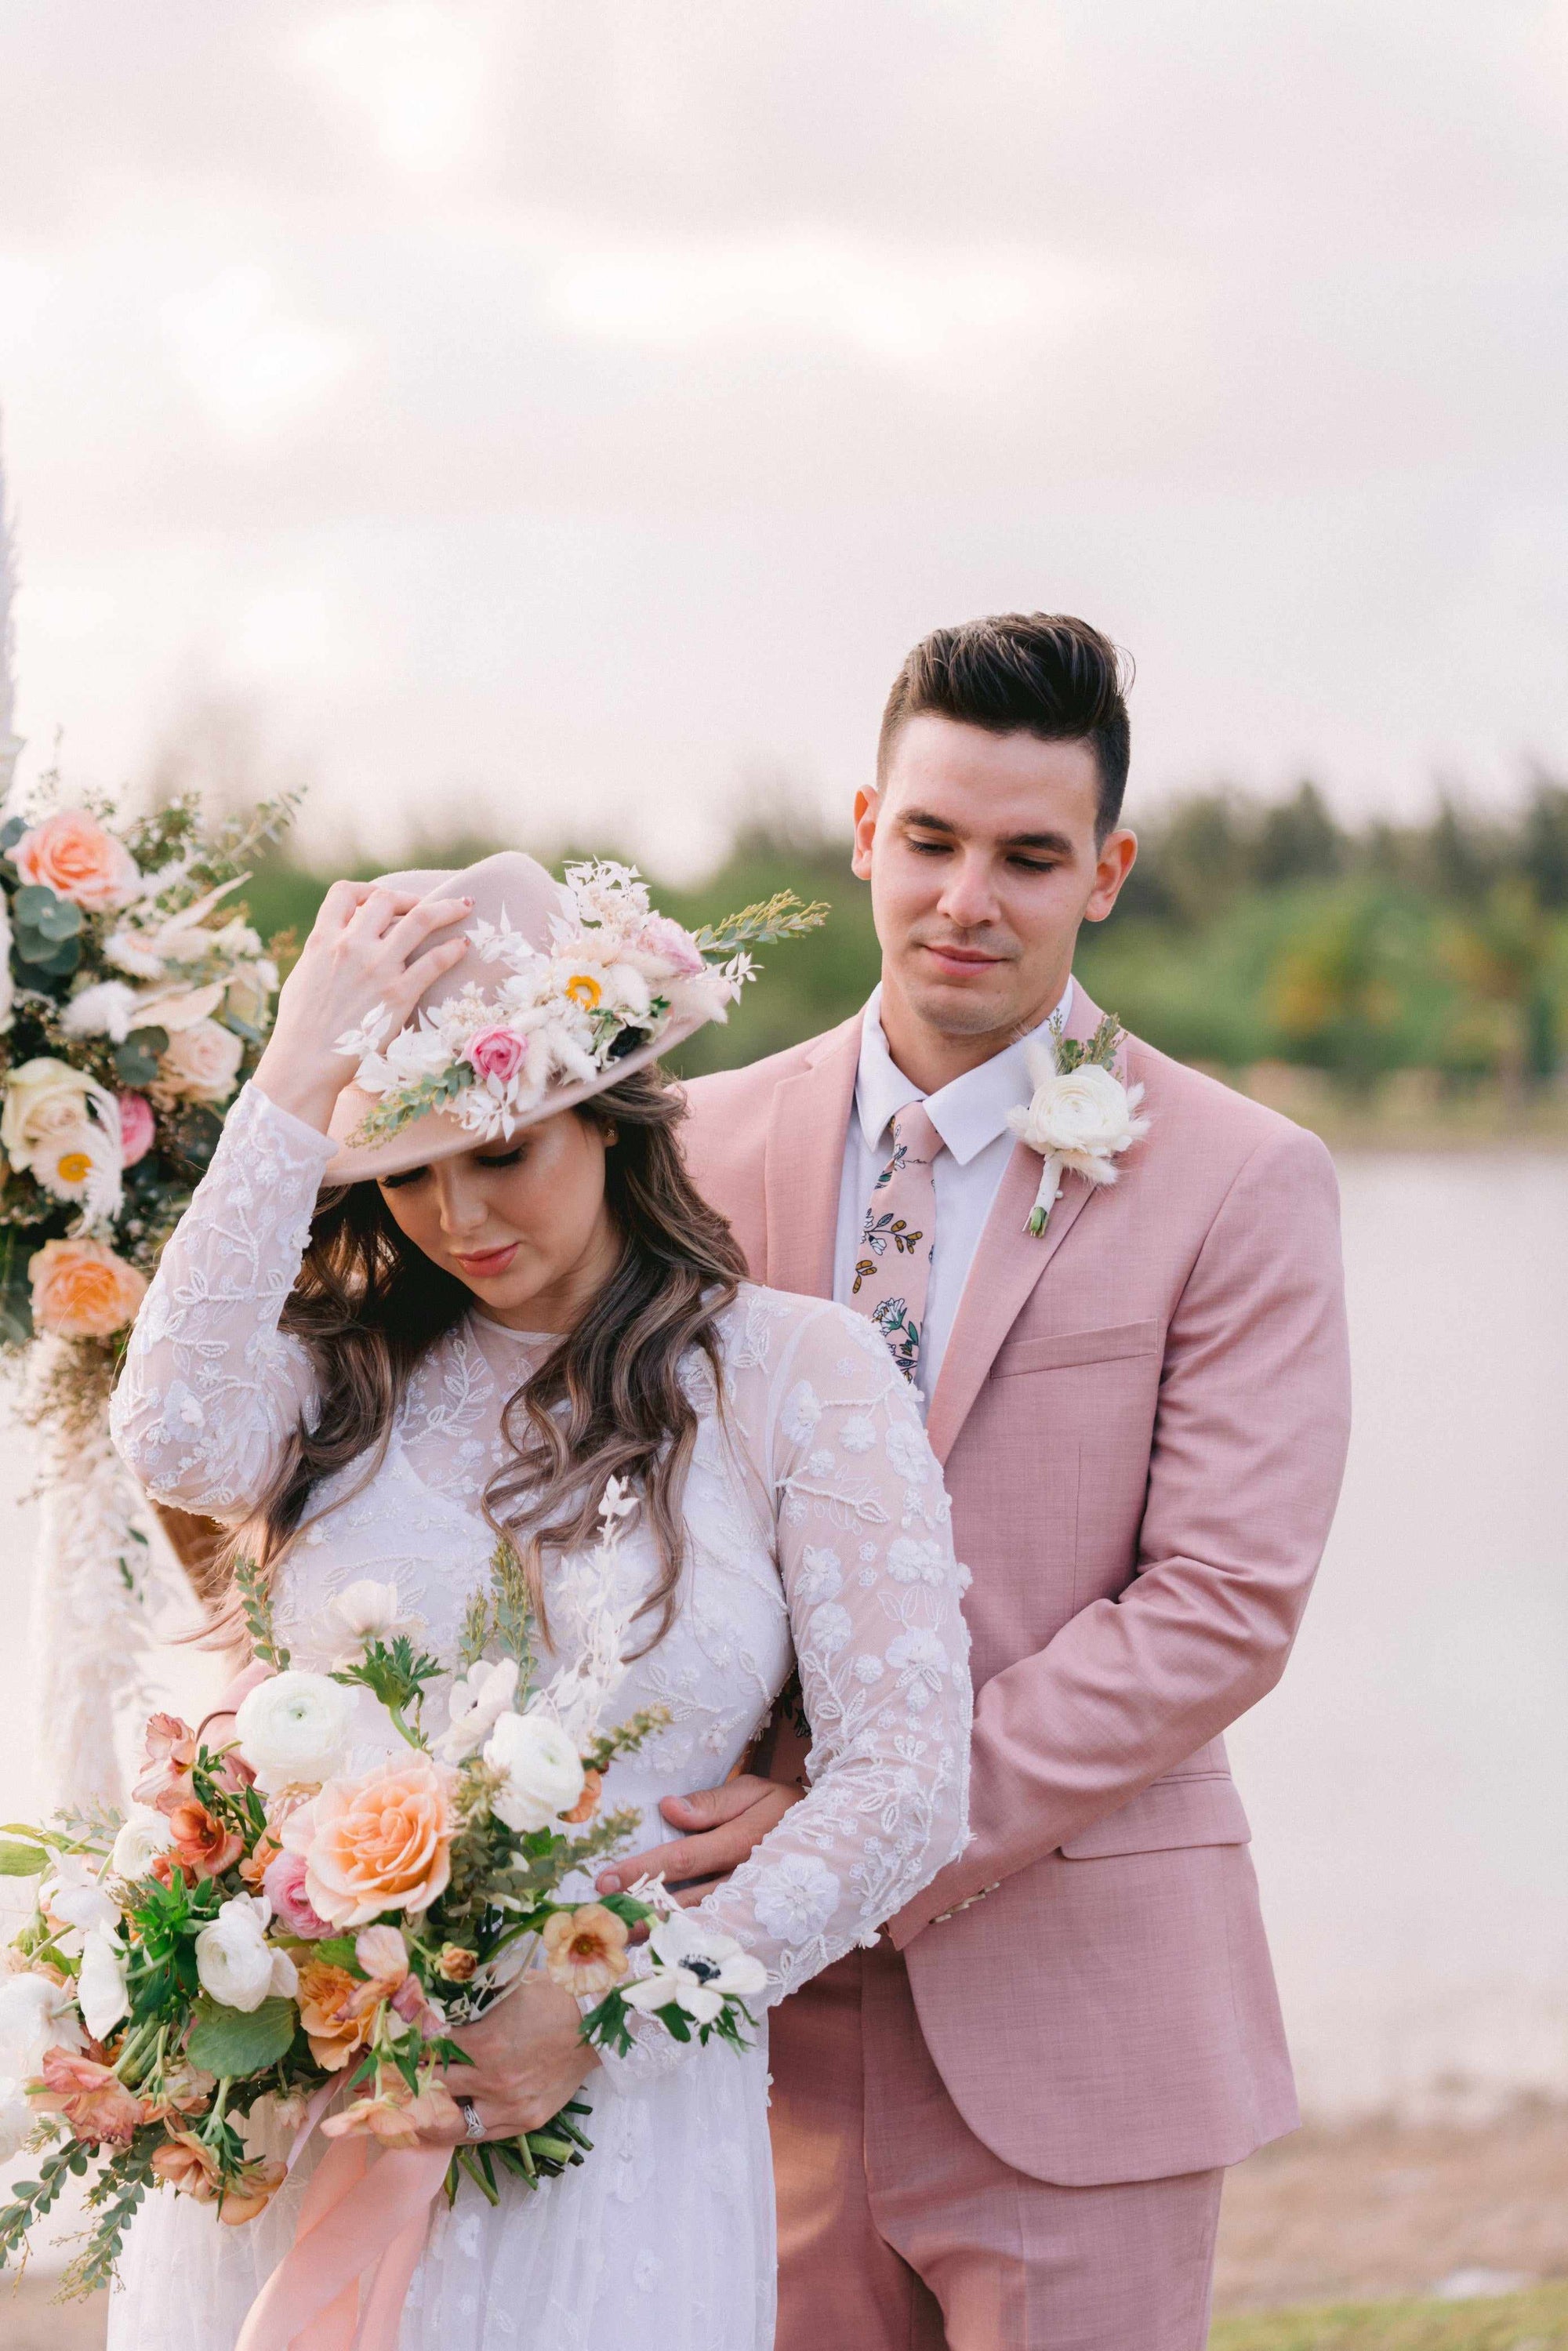 Xavier floral tie mytieshop flower neckties for wedding prom elopments shoots groom groomsmen